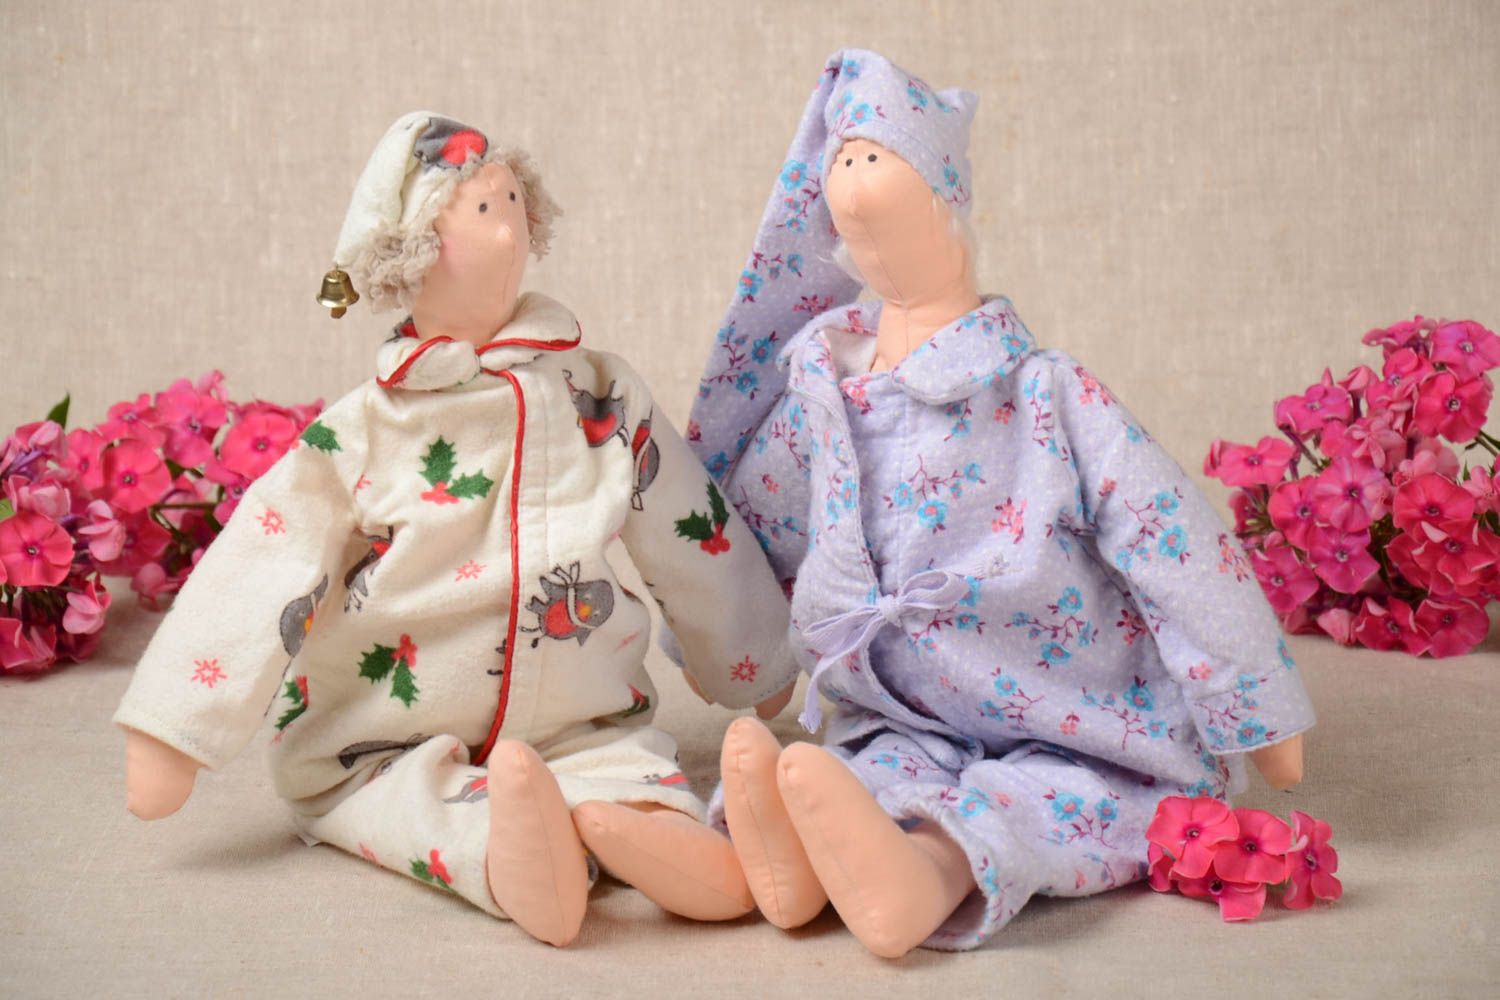 Игрушки куклы из ткани набор из 2 изделий светлые небольшие для детей хэнд мейд фото 1